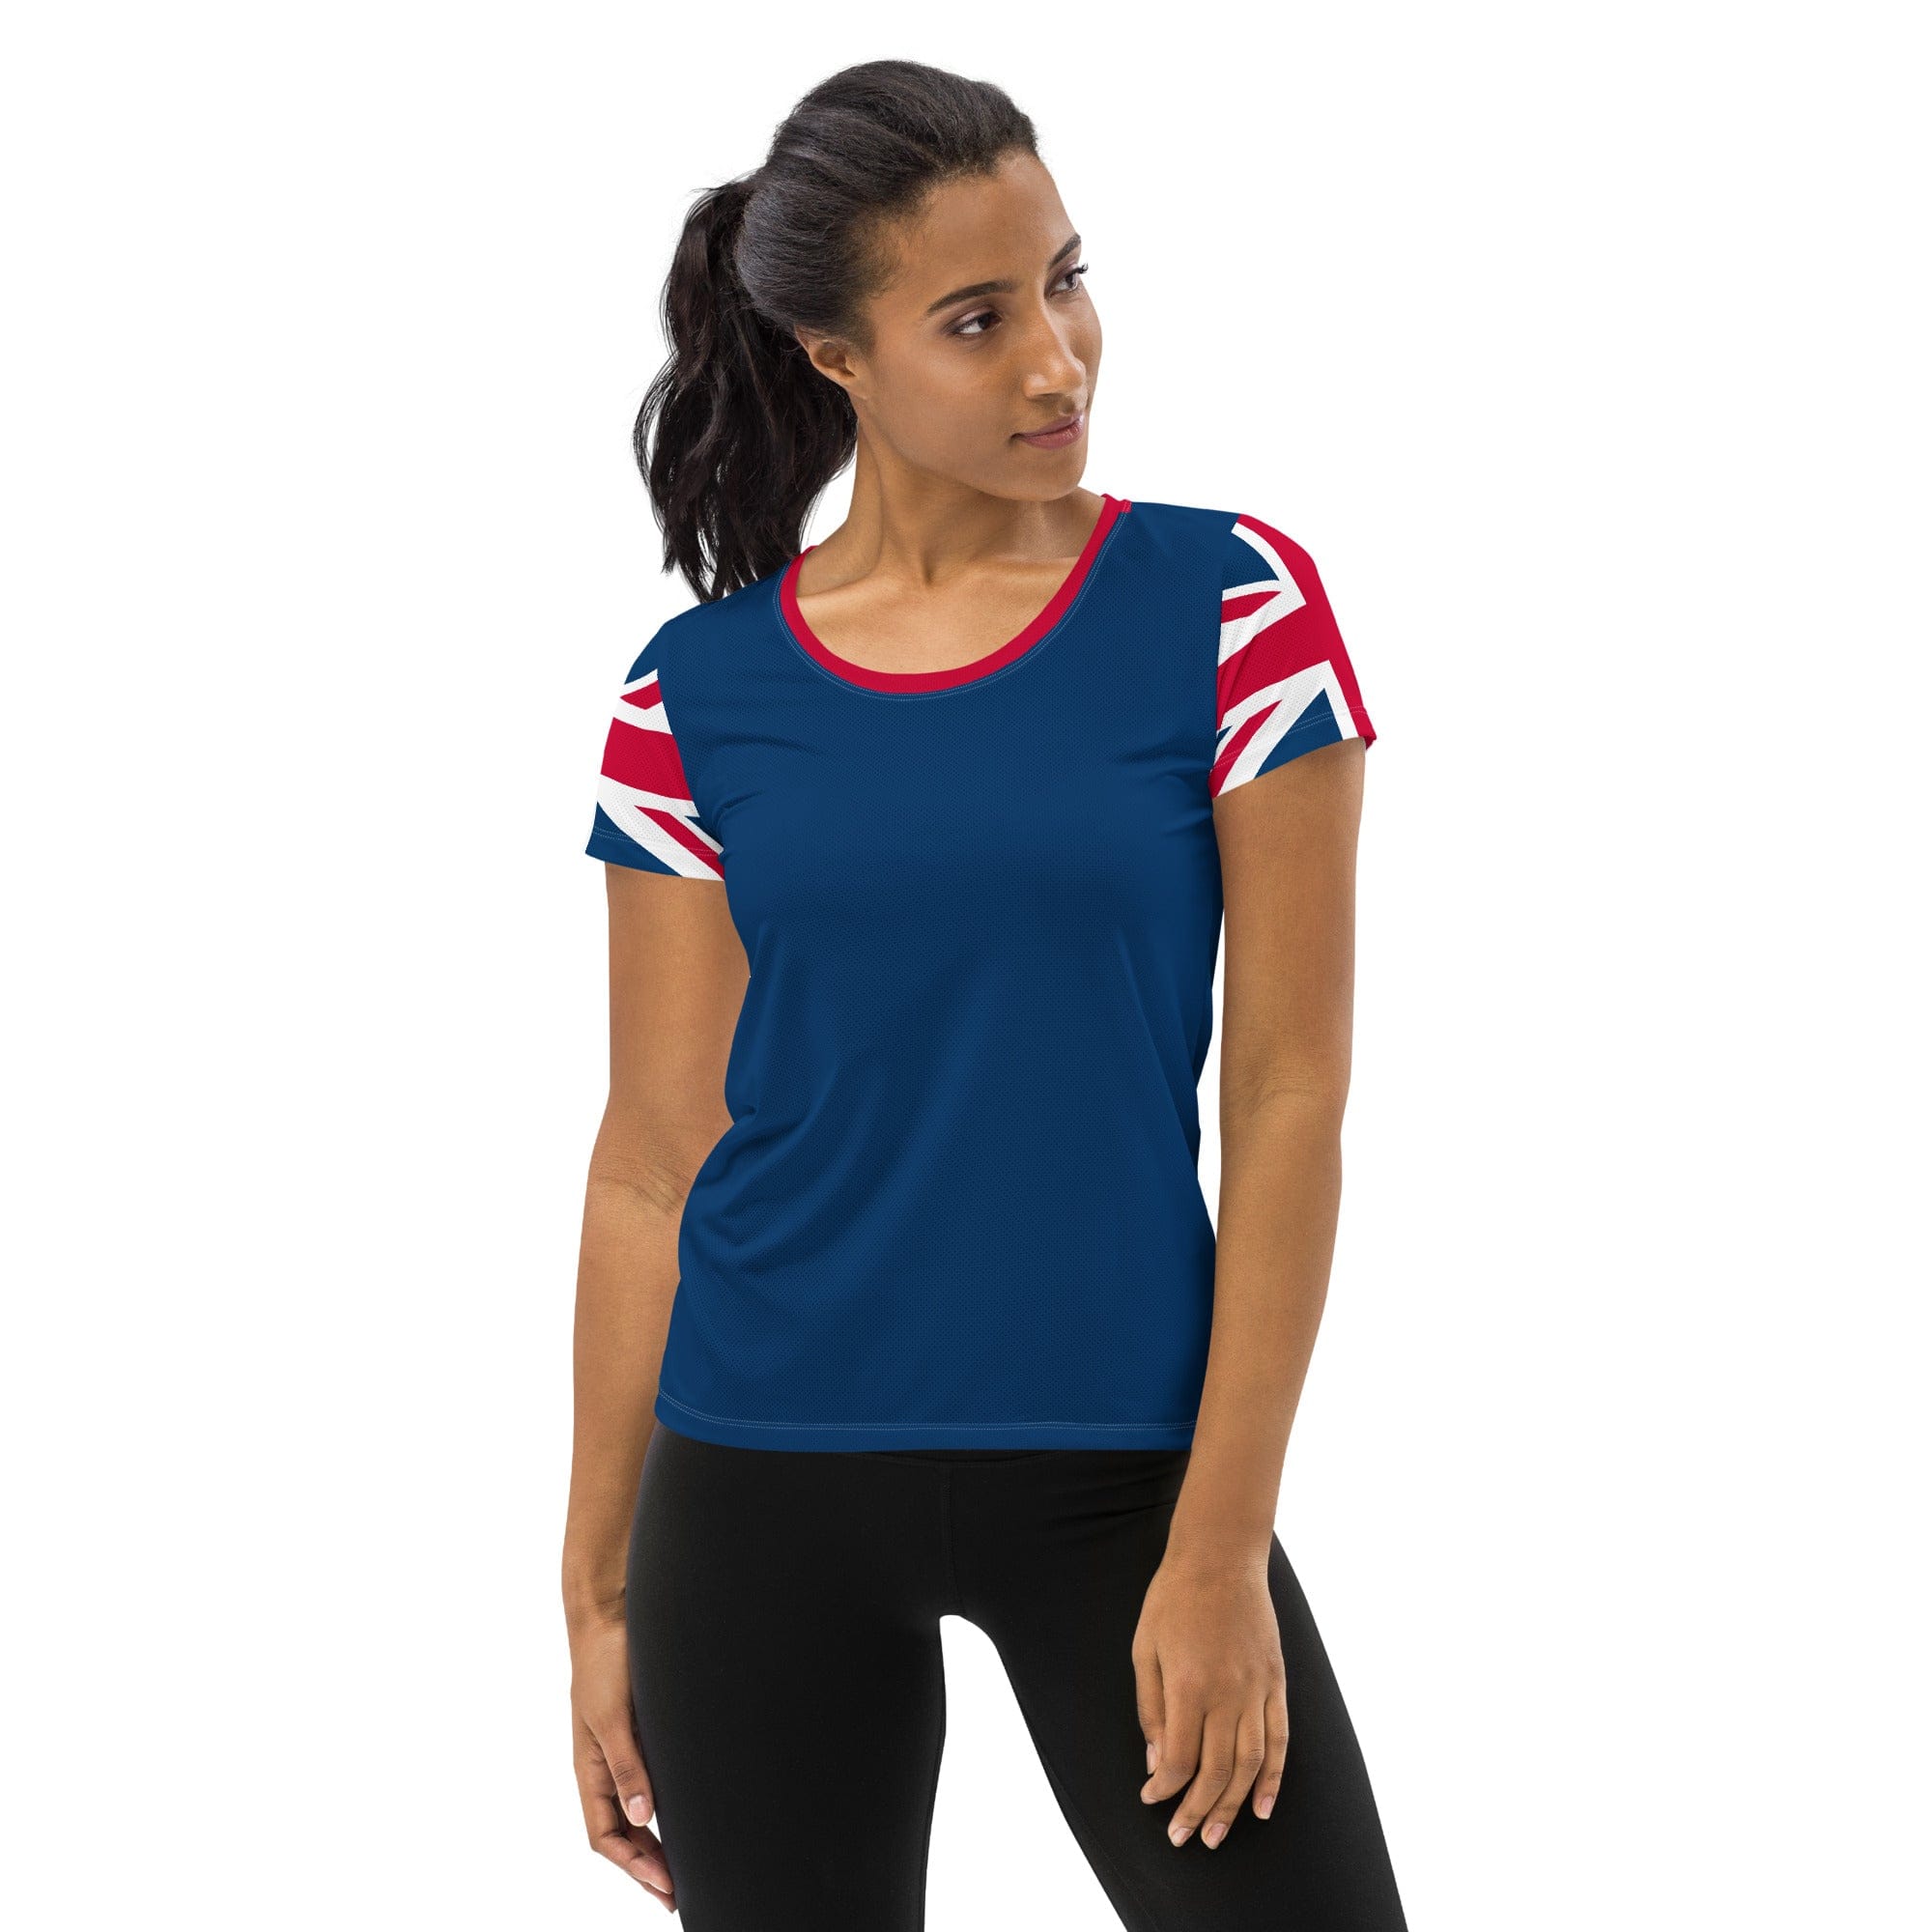 Union Jack Women's Workout Shirt